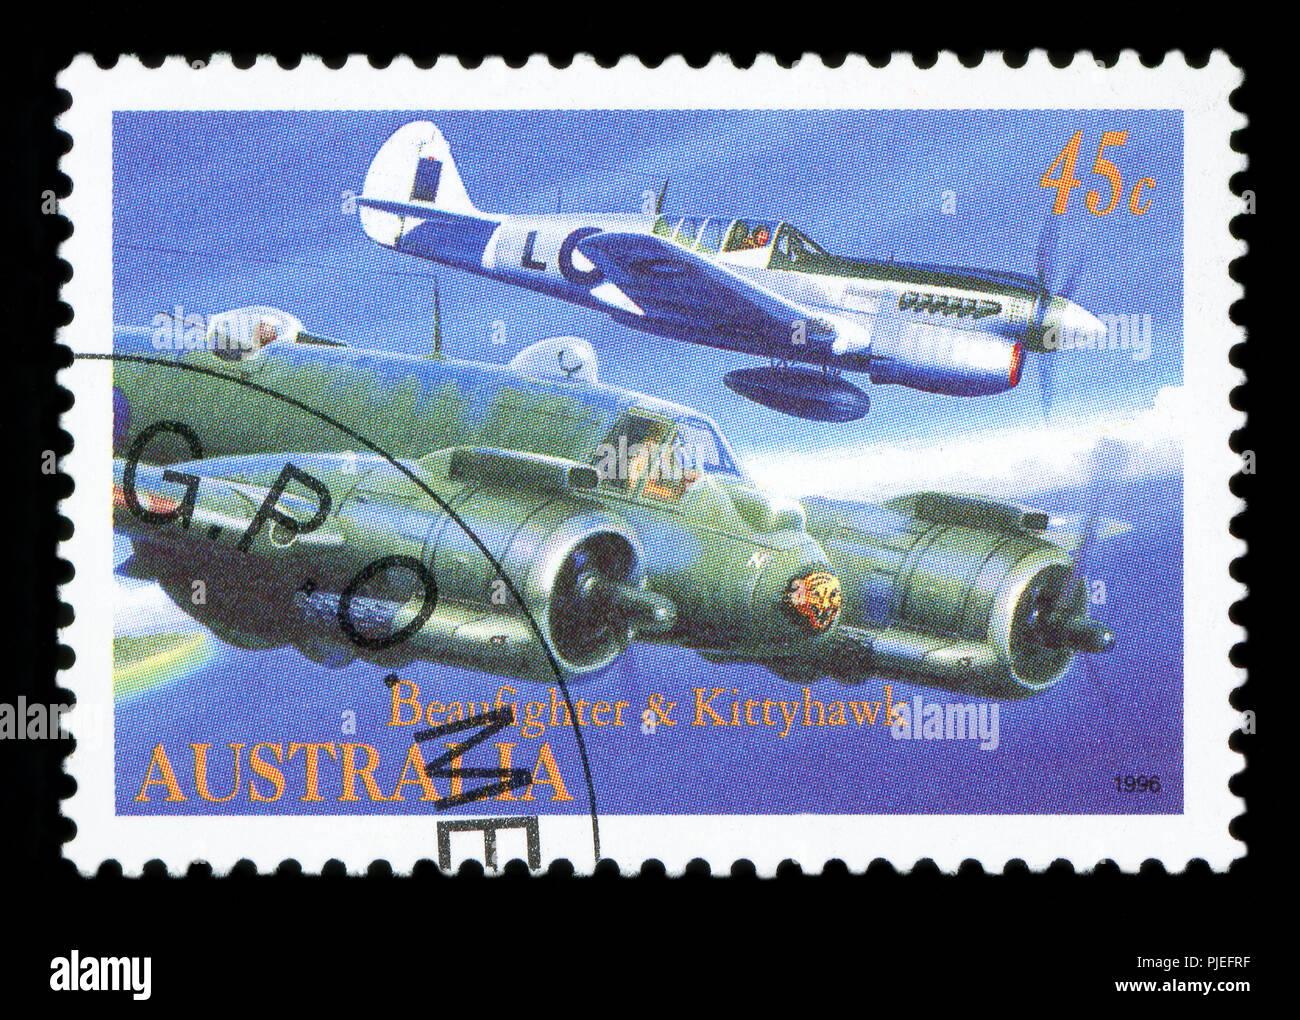 L'AUSTRALIE - circa 1996 : timbre imprimé en Australie montre l'avion Beaufighter et Kittyhawk, série d'aviation militaire, vers 1996 Banque D'Images